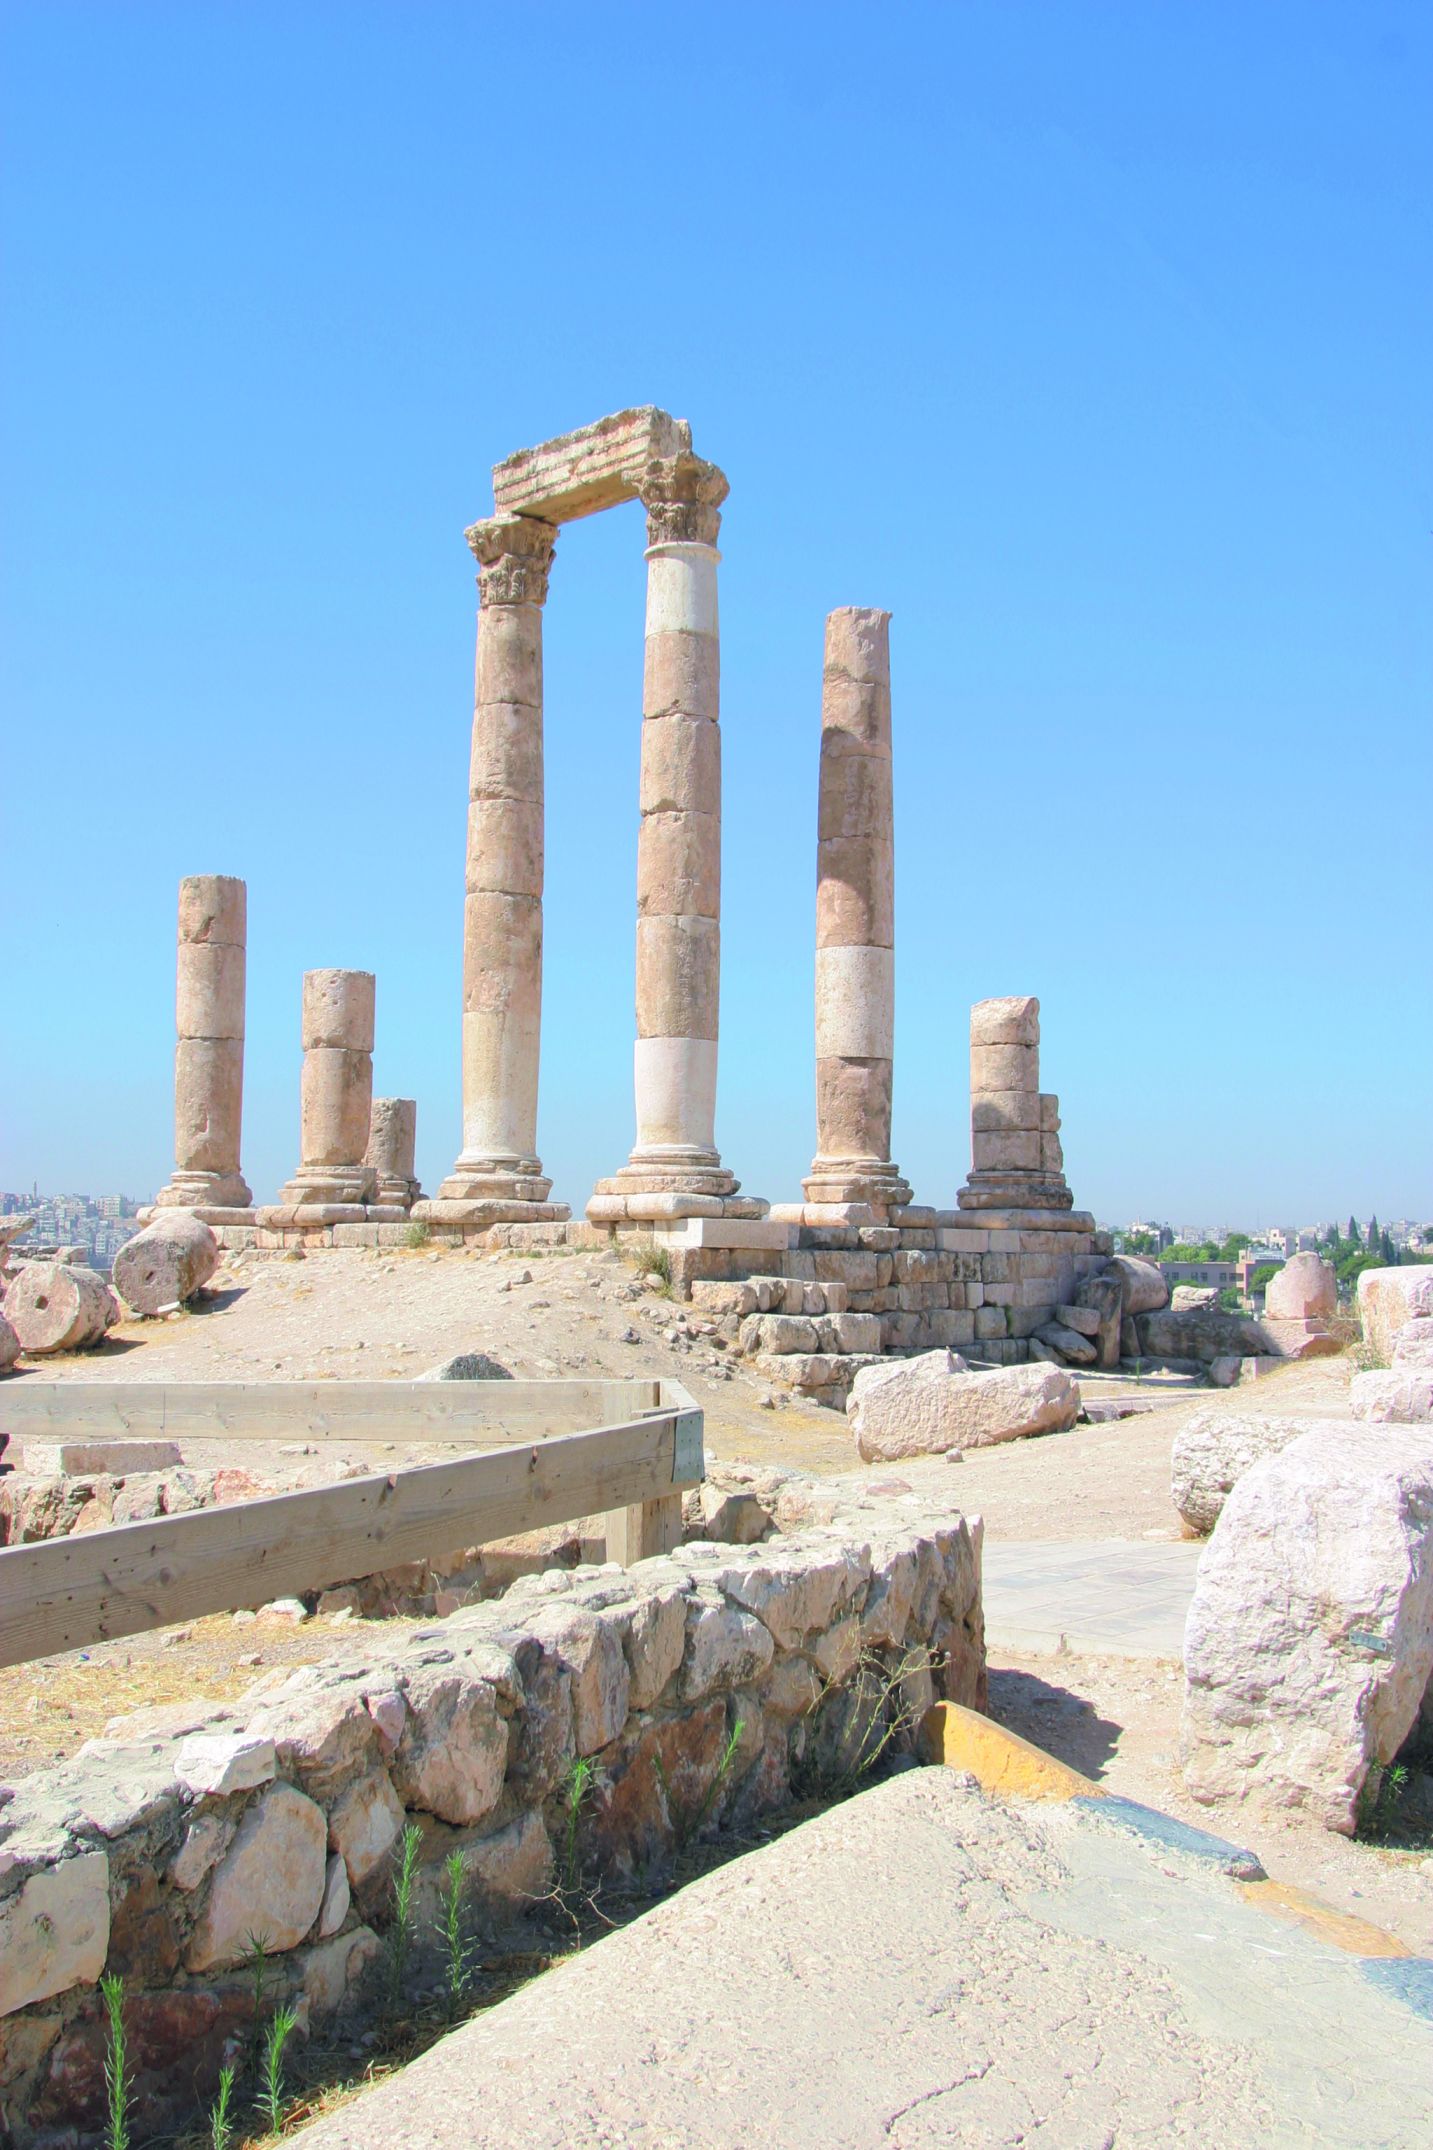 Le temple d'Hercule au cœur de la Citadelle d'Amman (Qala'a).